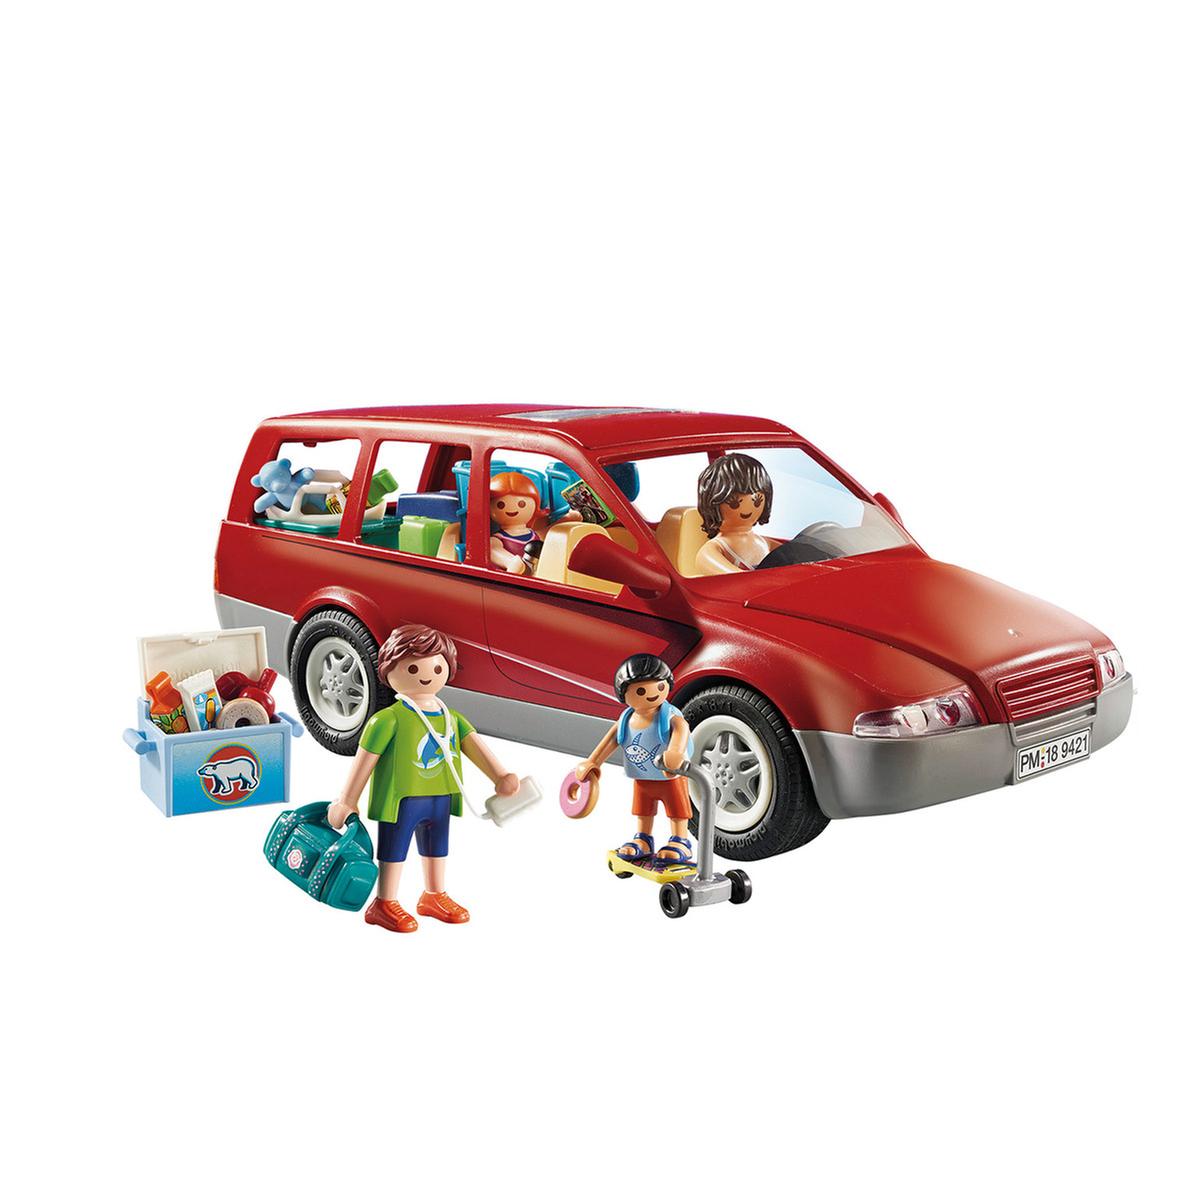 9421 Playmobil coche familiar con enganche de remolque diversión familiar conveniente para las edades de 4 años 